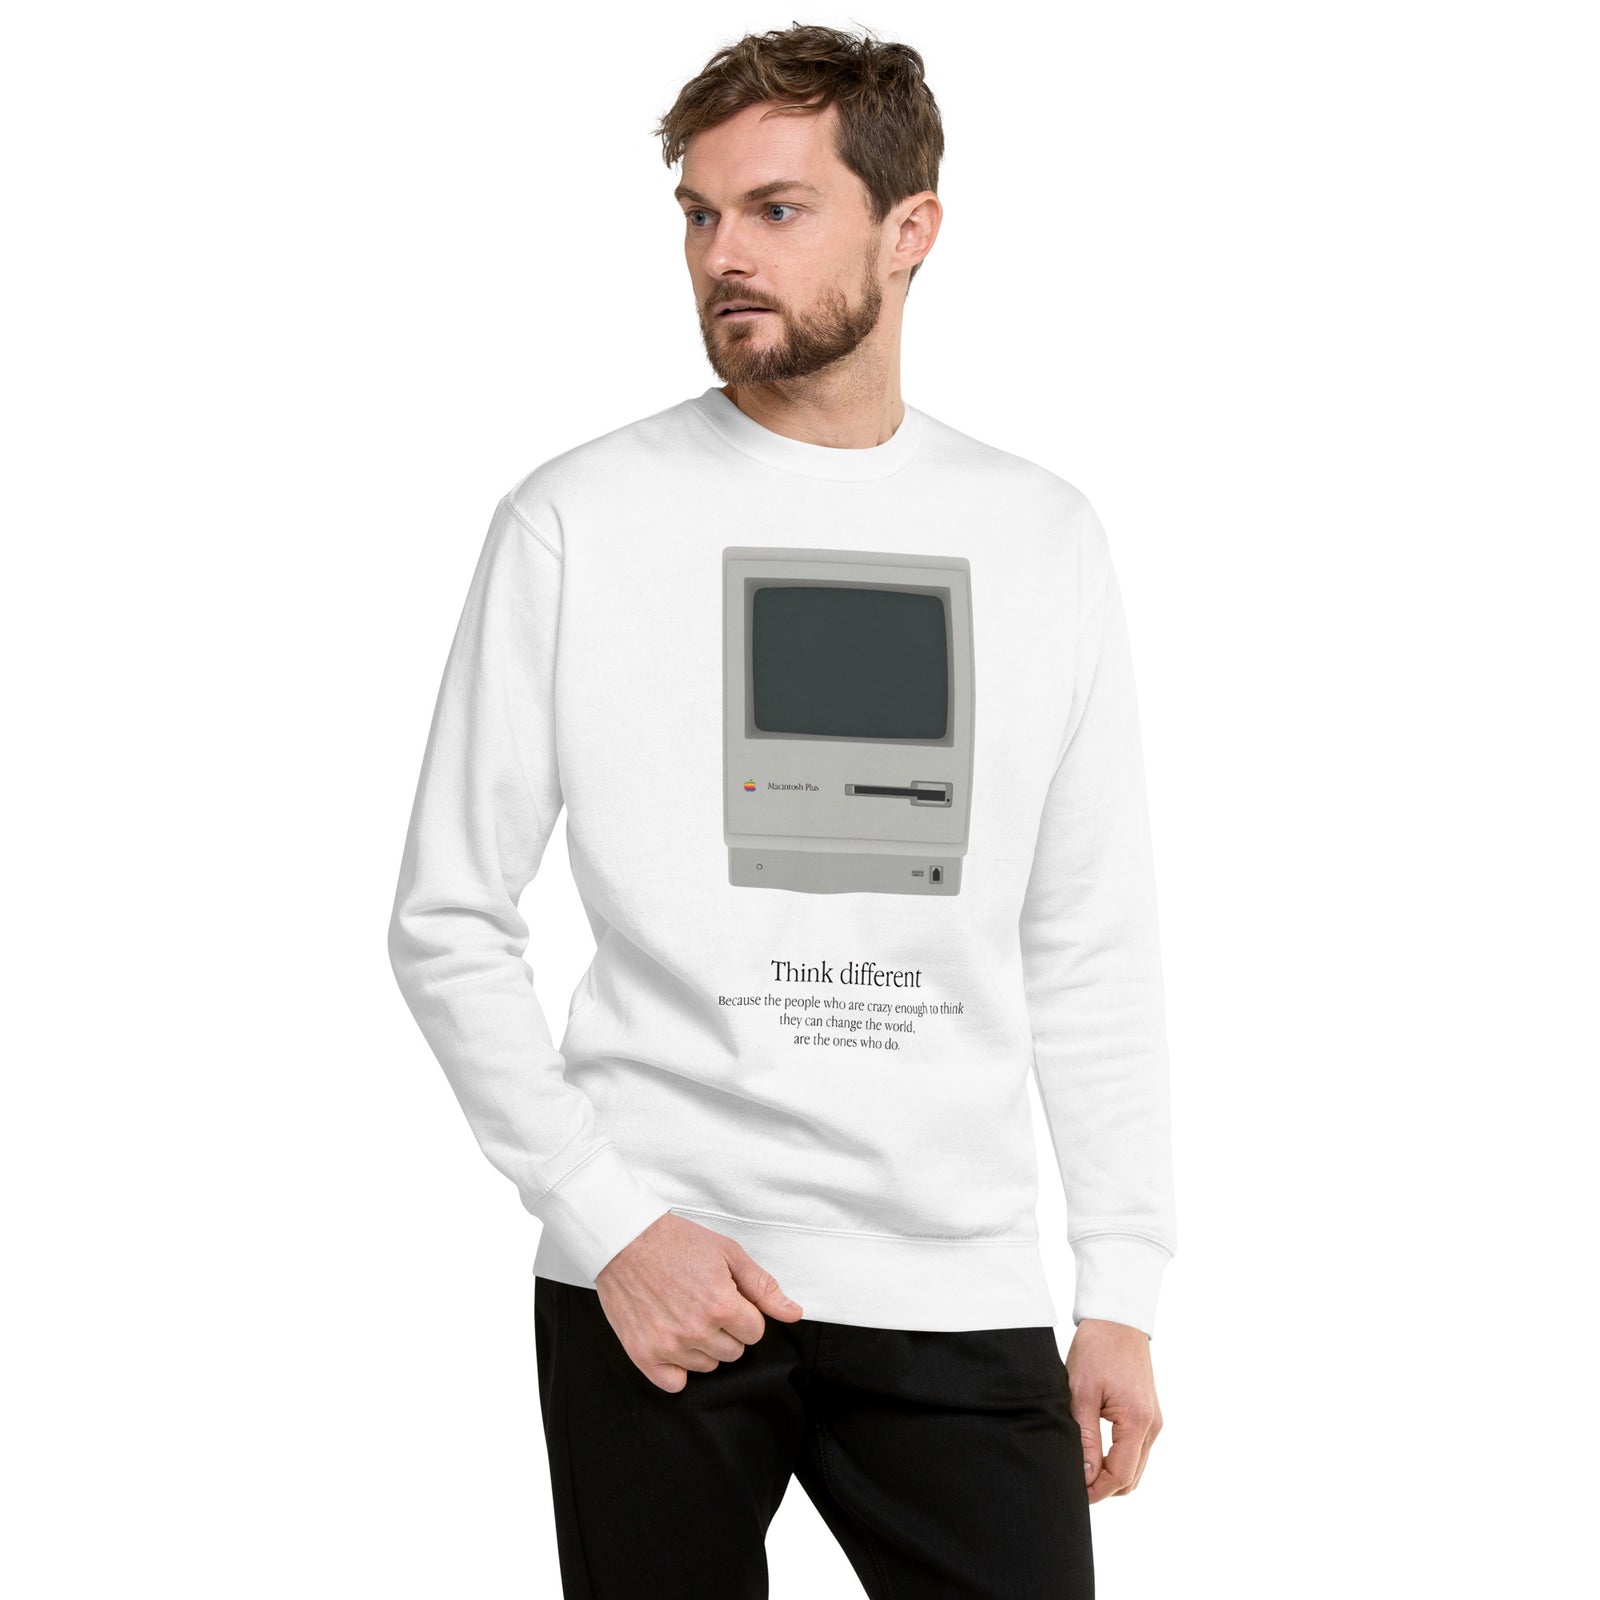 Suéter Macintosh Plus, Disponible en la mejor tienda online para comprar tu merch favorita, la mejor Calidad, compra Ahora en Algoritmo! 